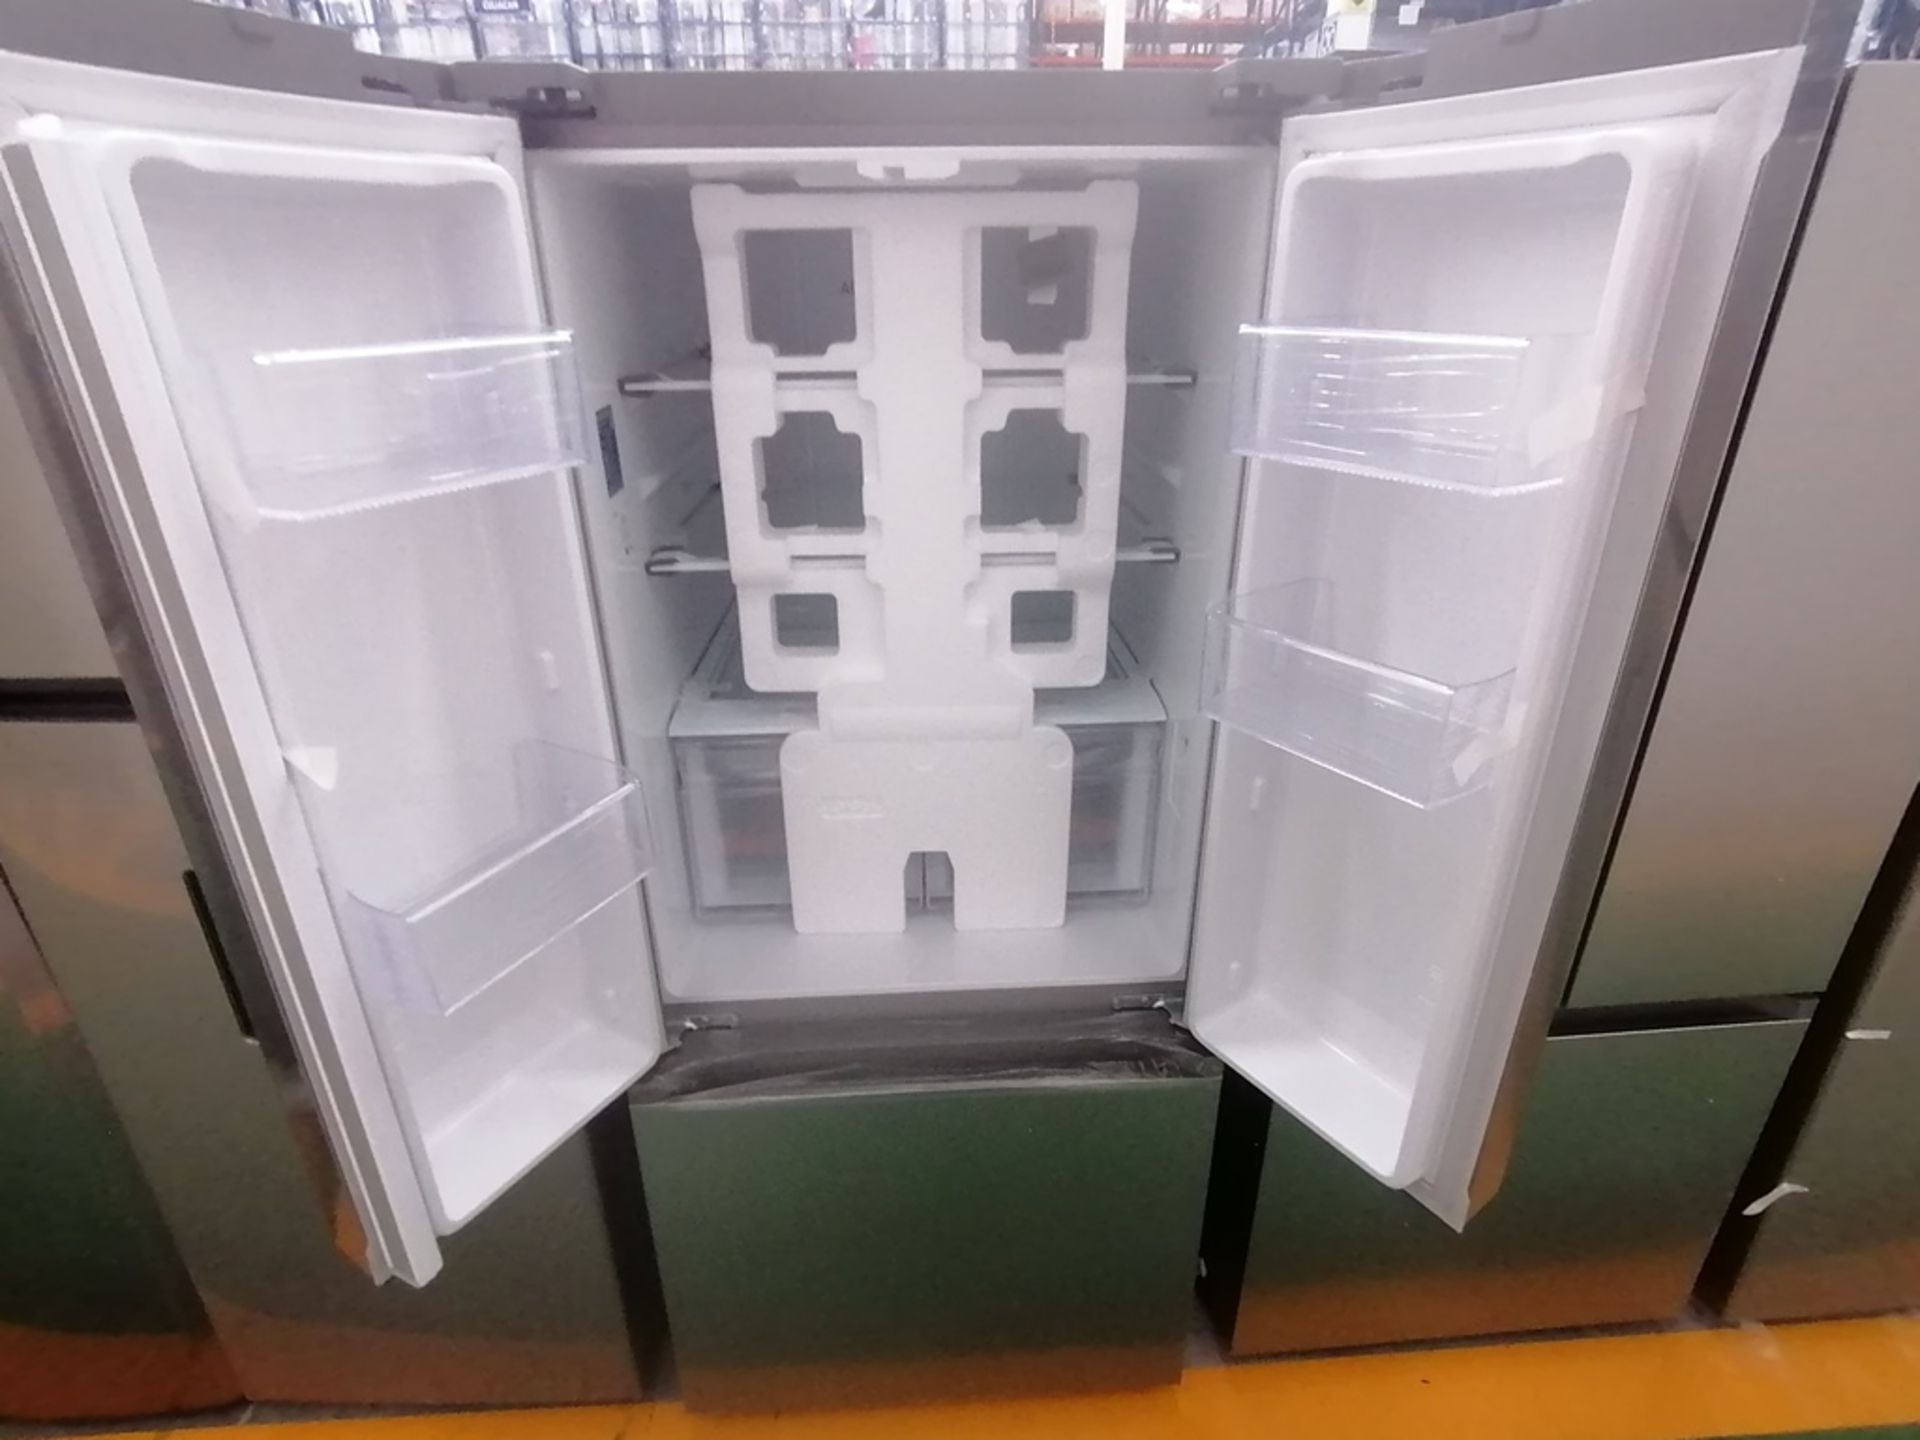 Lote de 2 refrigeradores incluye: 1 Refrigerador, Marca Samsung, Modelo RT22A401059, Serie 0BA84BBR - Image 12 of 15